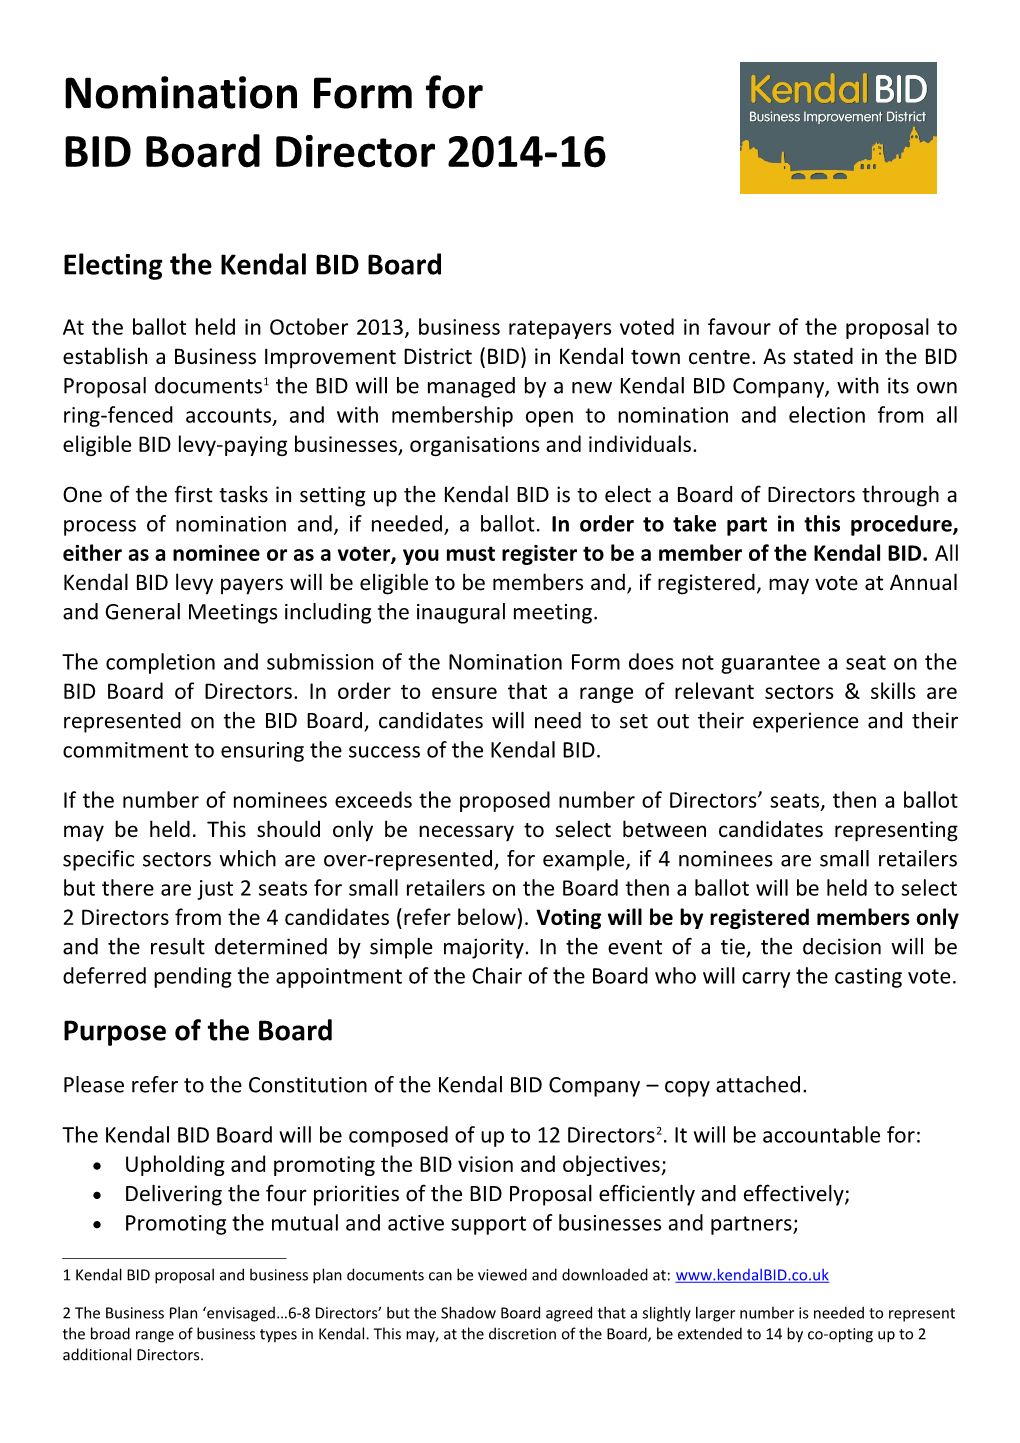 Electing the Kendal BID Board